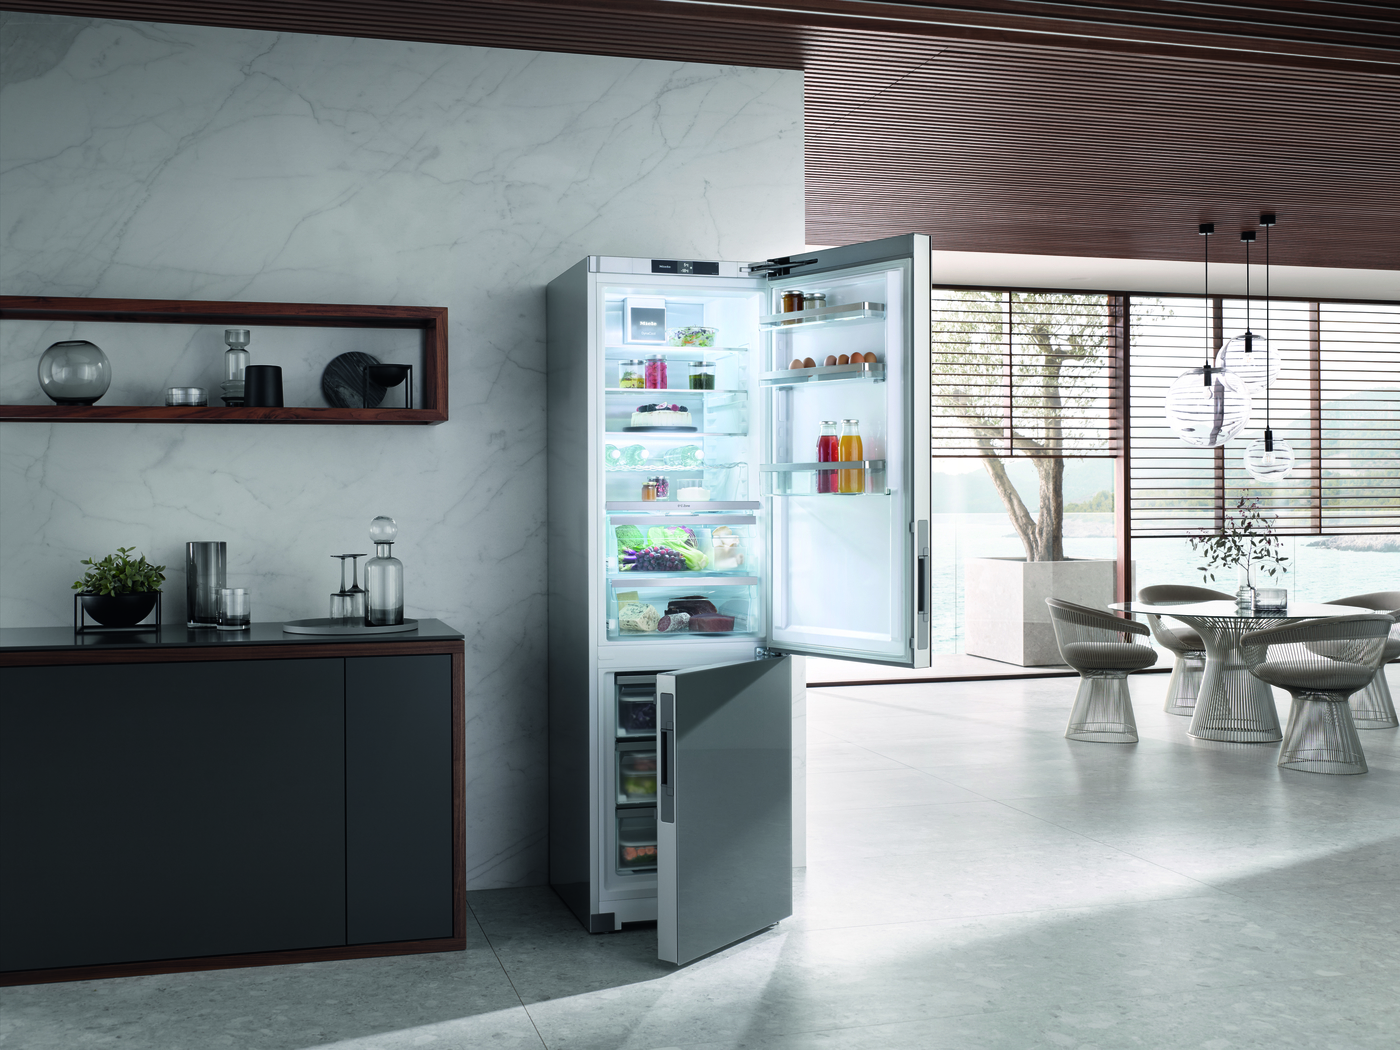  Neuer Smarter Kühlschrank kennt Gewohnheiten und bestellt